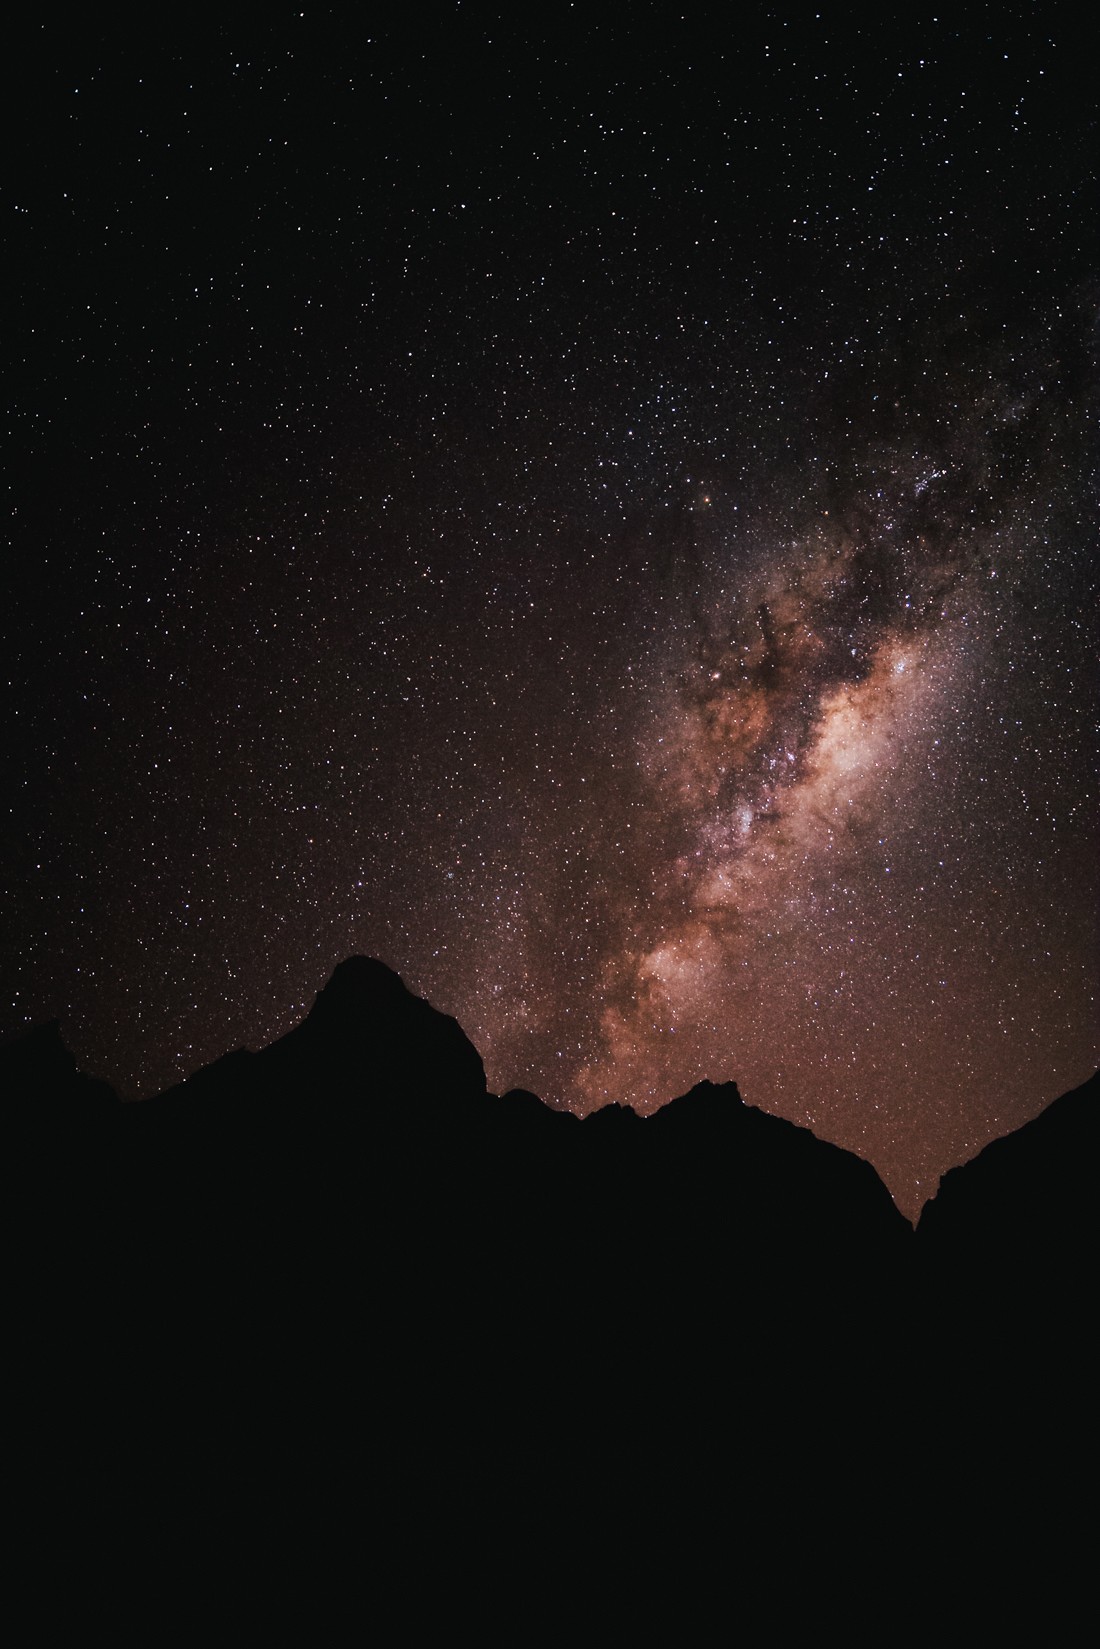 013 sternenhimmel milchstrasse atacama wueste san pedro de atacama - Chile - Sternenhimmel in der Atacama Wüste